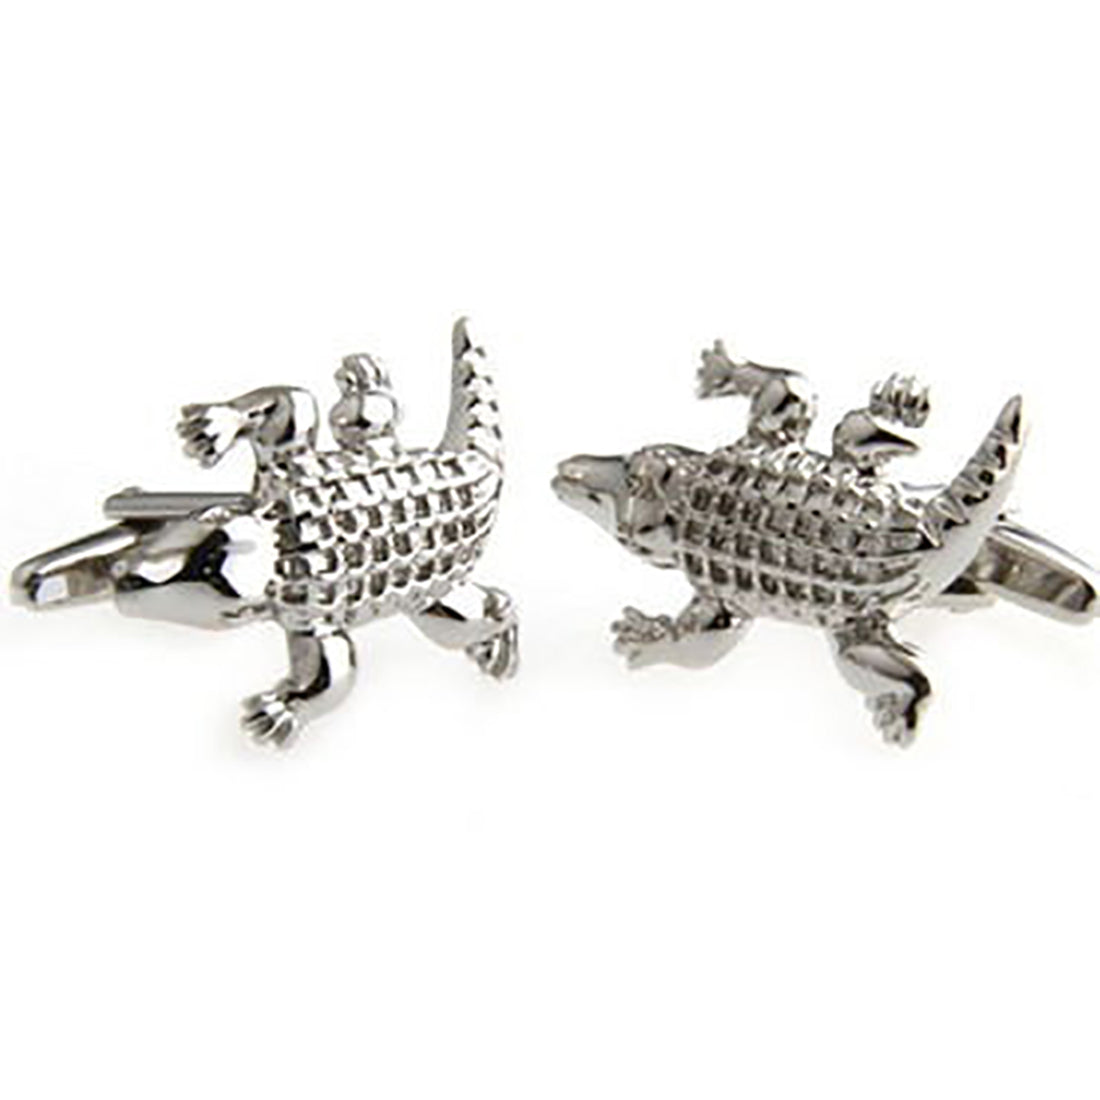 Alligator Cufflinks - 3D, Silver - SummerTies